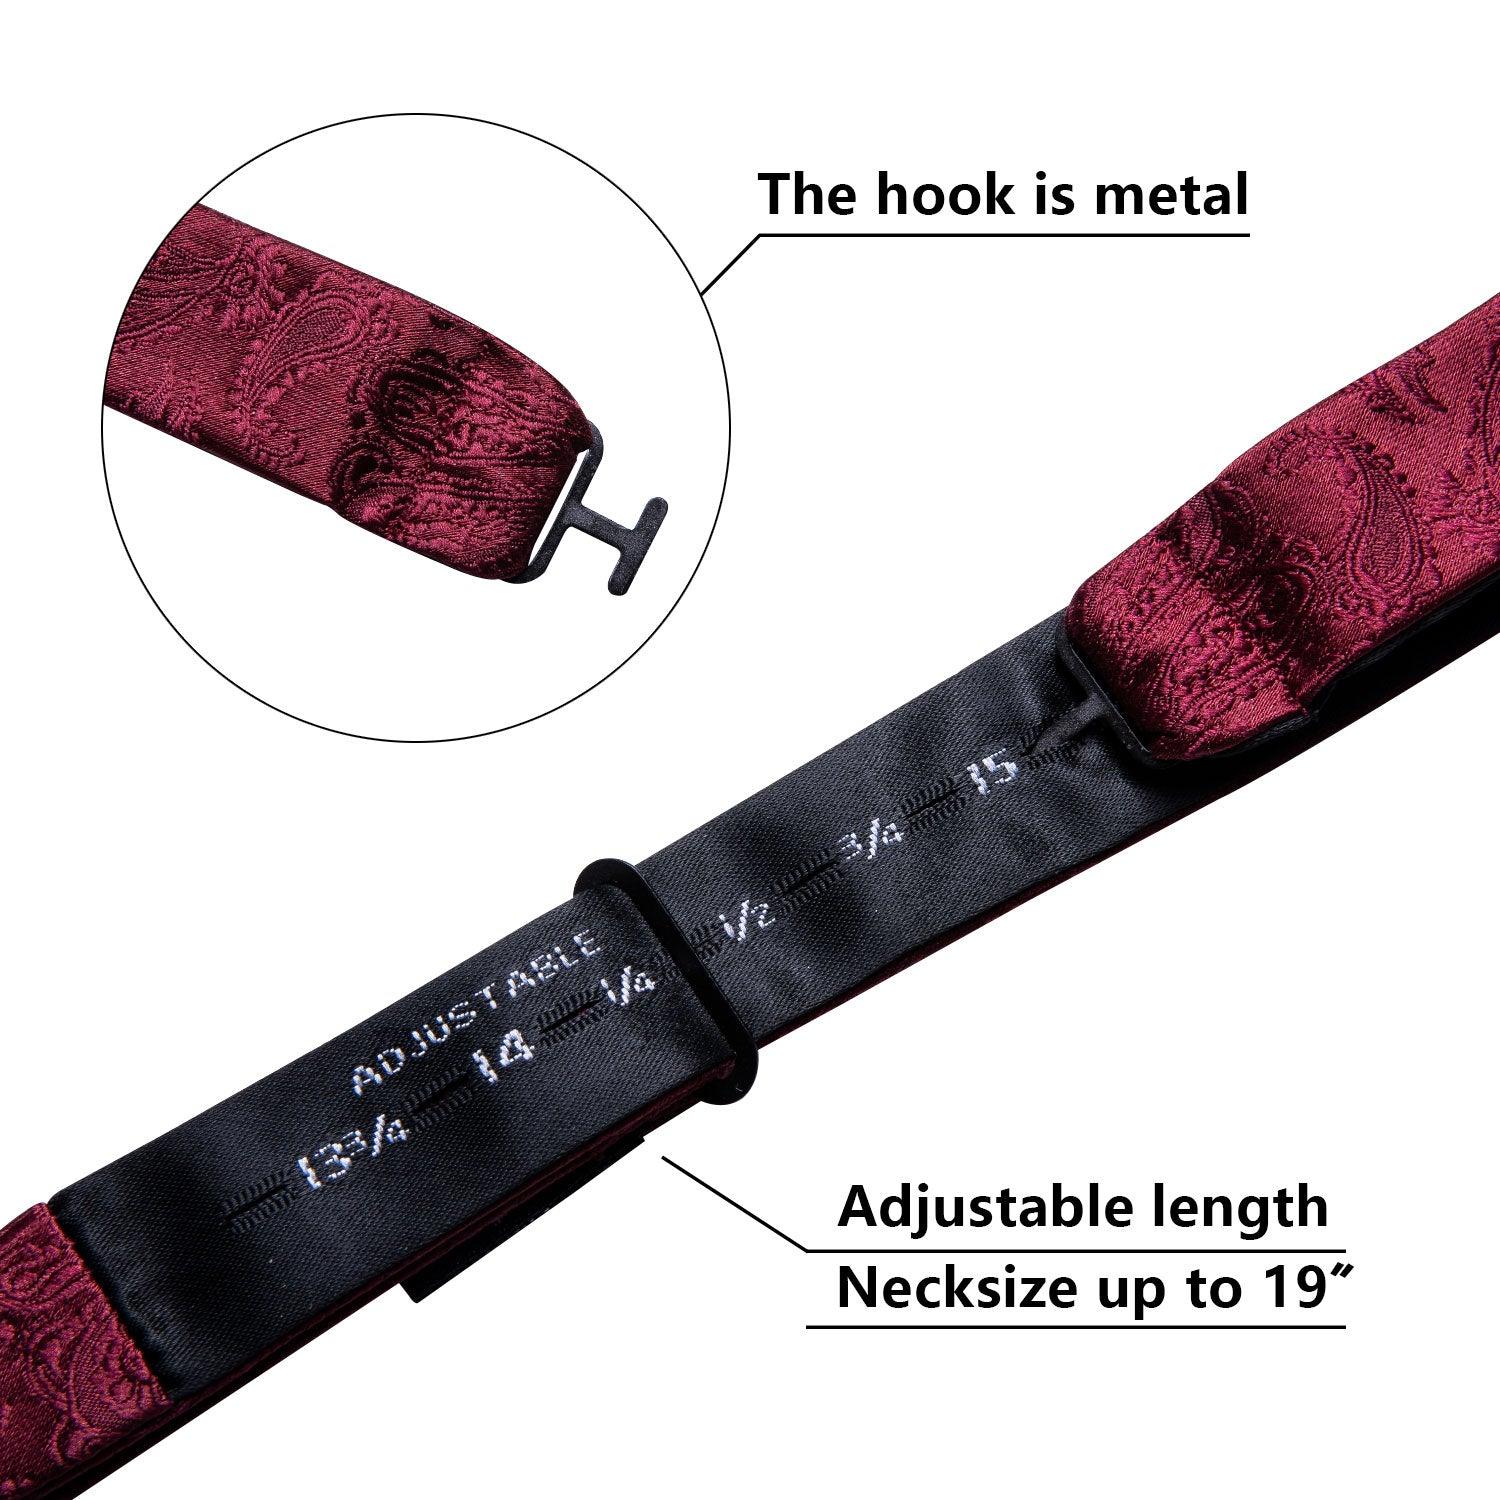 Red Paisley Silk Bowtie Pocket Square Cufflink Set - STYLETIE